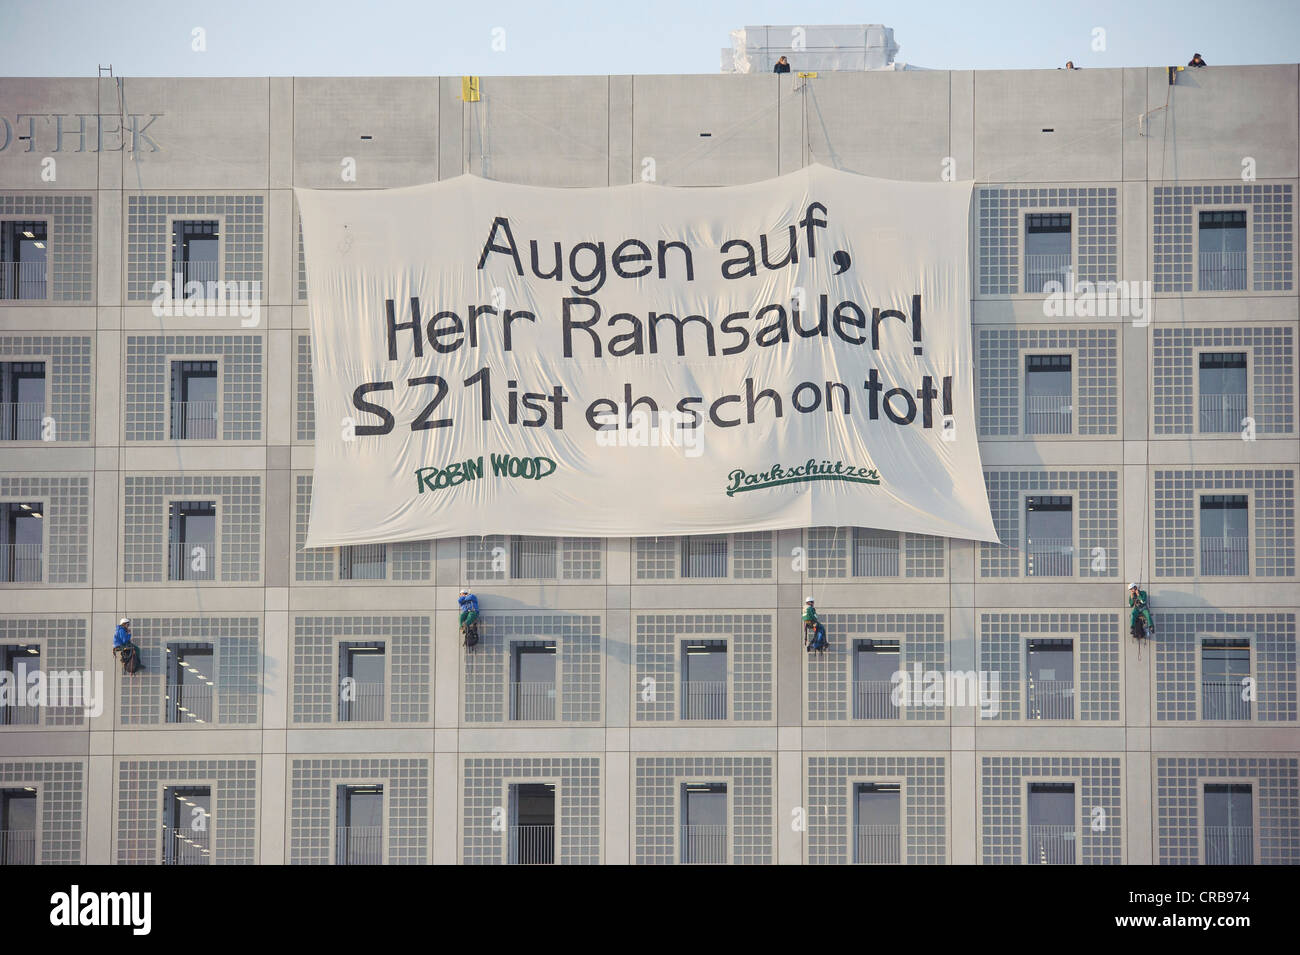 La protesta contro la Stuttgart 21 Stazione ferroviaria project, attivisti distendere un enorme striscione presso la biblioteca comunale, 'Augen auf Herr Foto Stock